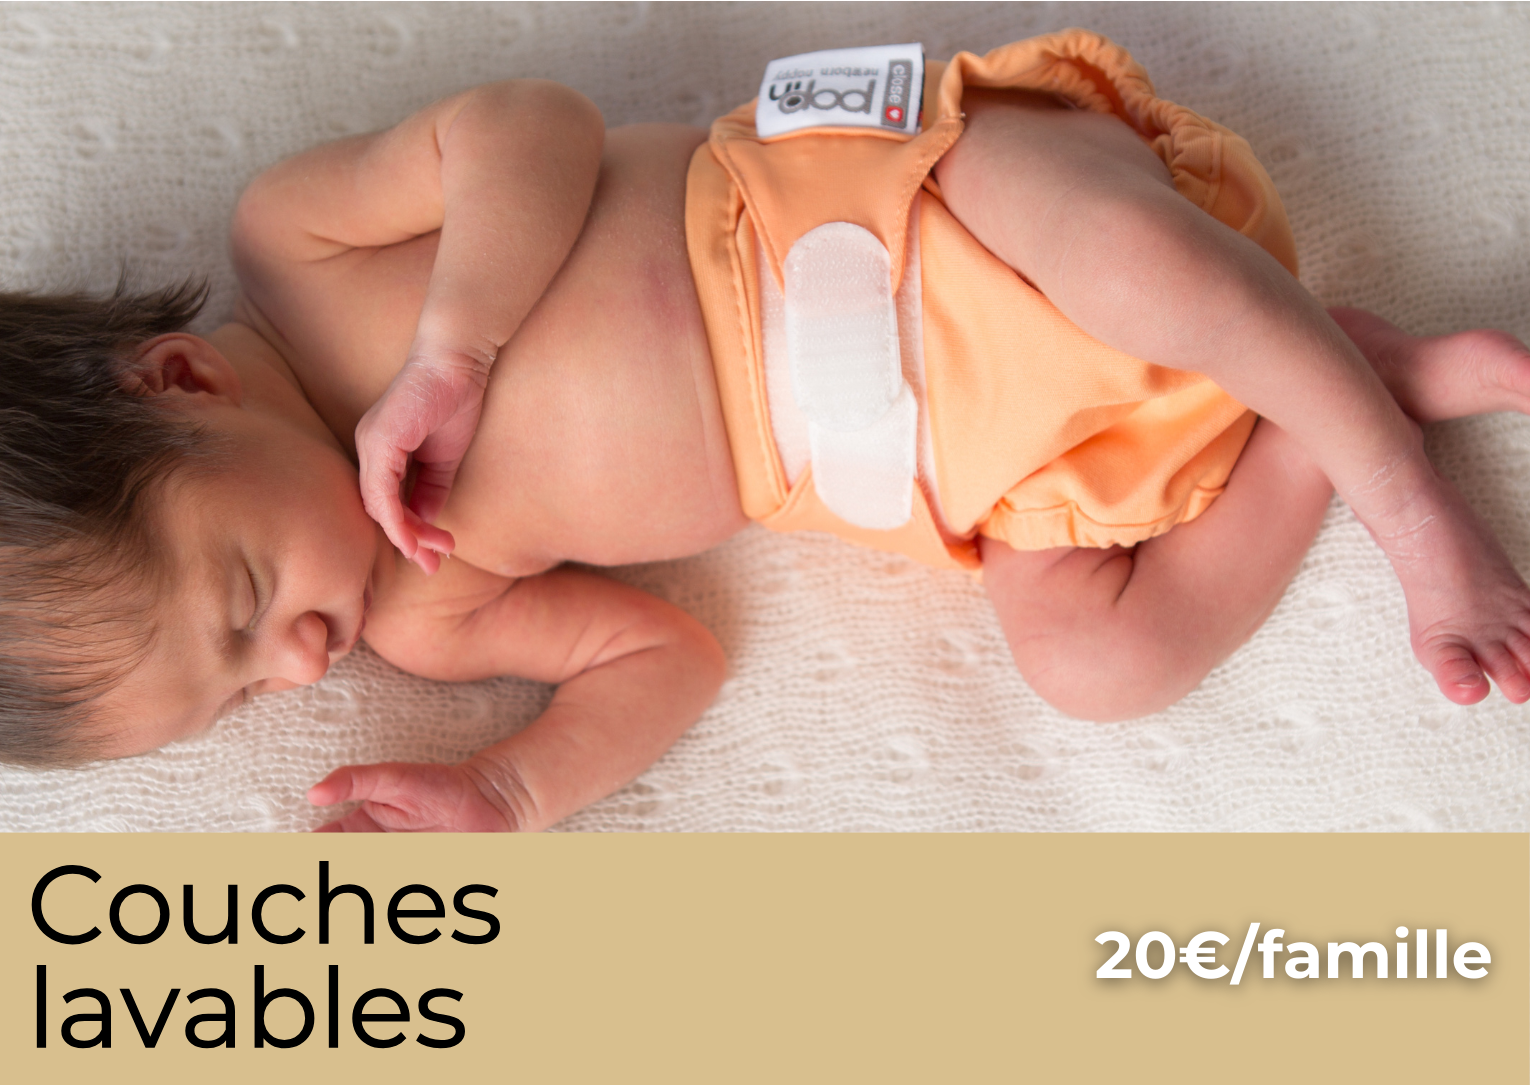 Couches lavables, bébé en couche, tarif de l'atelier 20 euros par famille